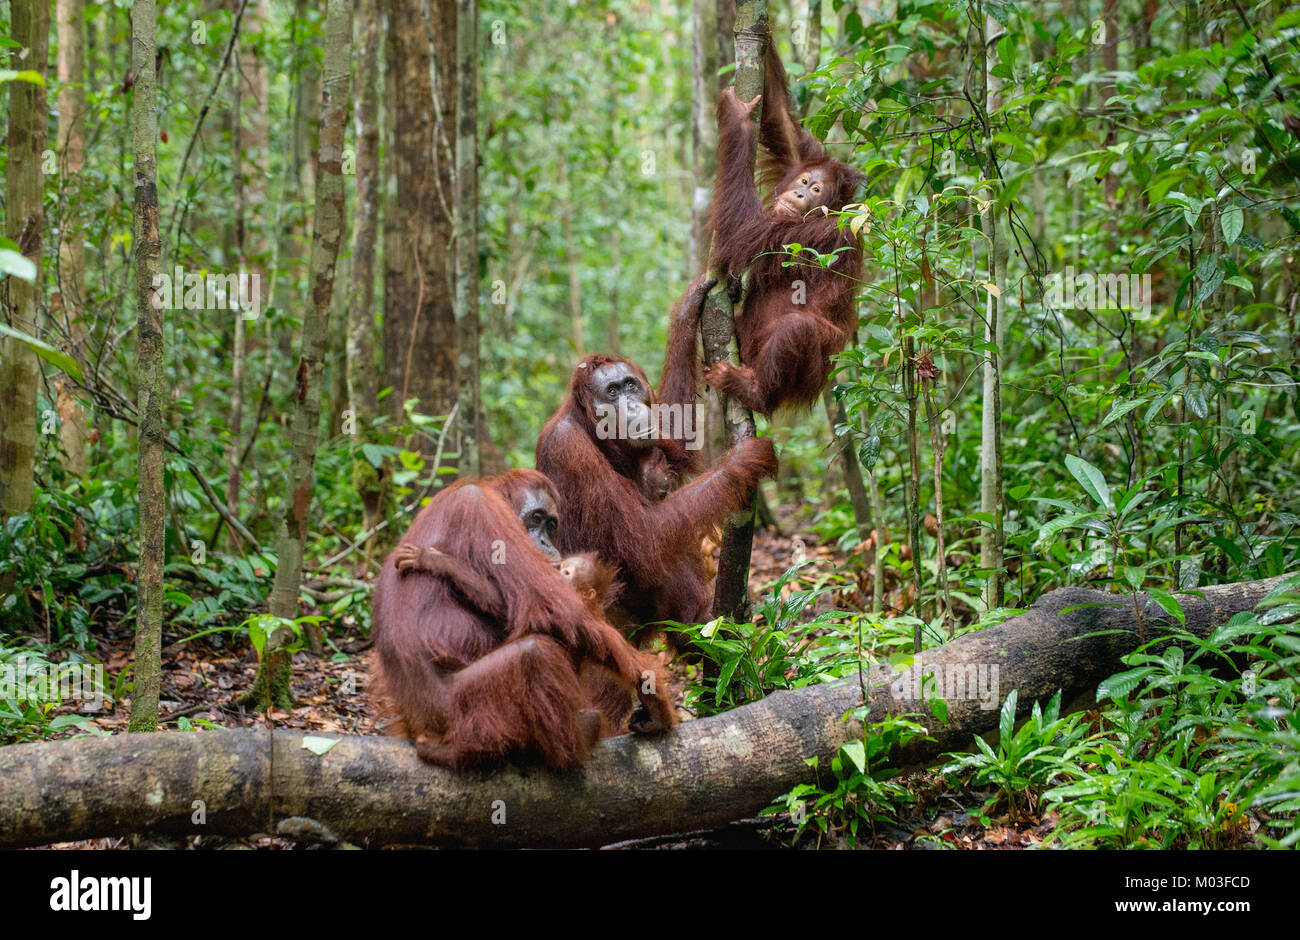 Orangutan in un habitat naturale. Bornean orangutan (Pongo pygmaeus wurmbii) nella natura selvaggia. La foresta pluviale tropicale dell'isola di Borneo. Indonesia Foto Stock